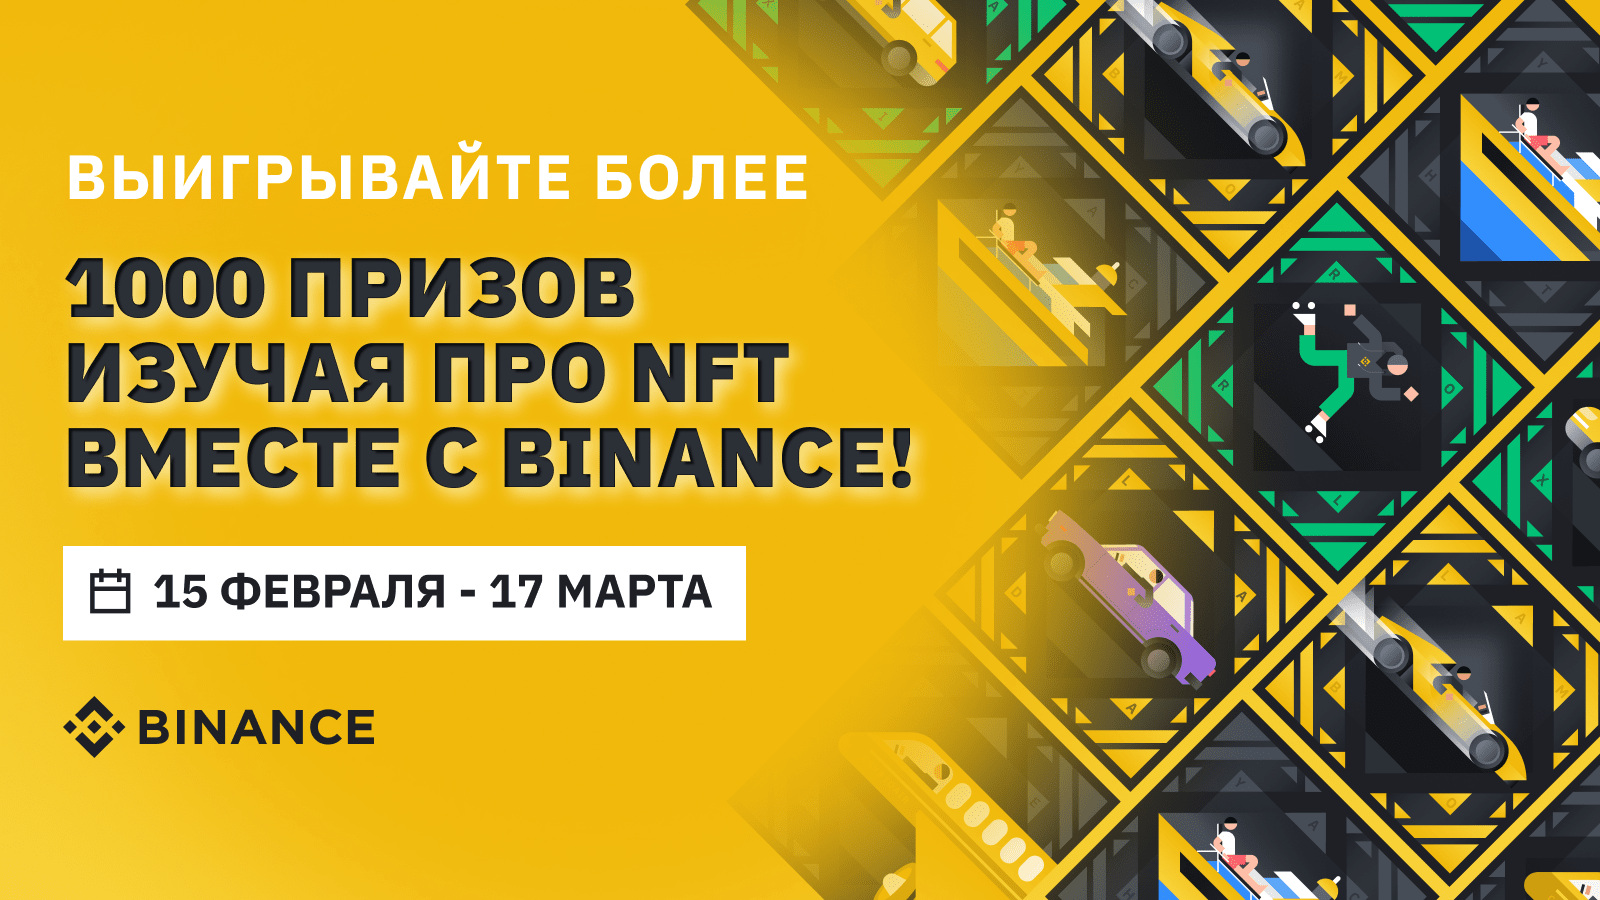 Узнайте что такое NFT и выиграйте более 1000 крутых призов от Binance